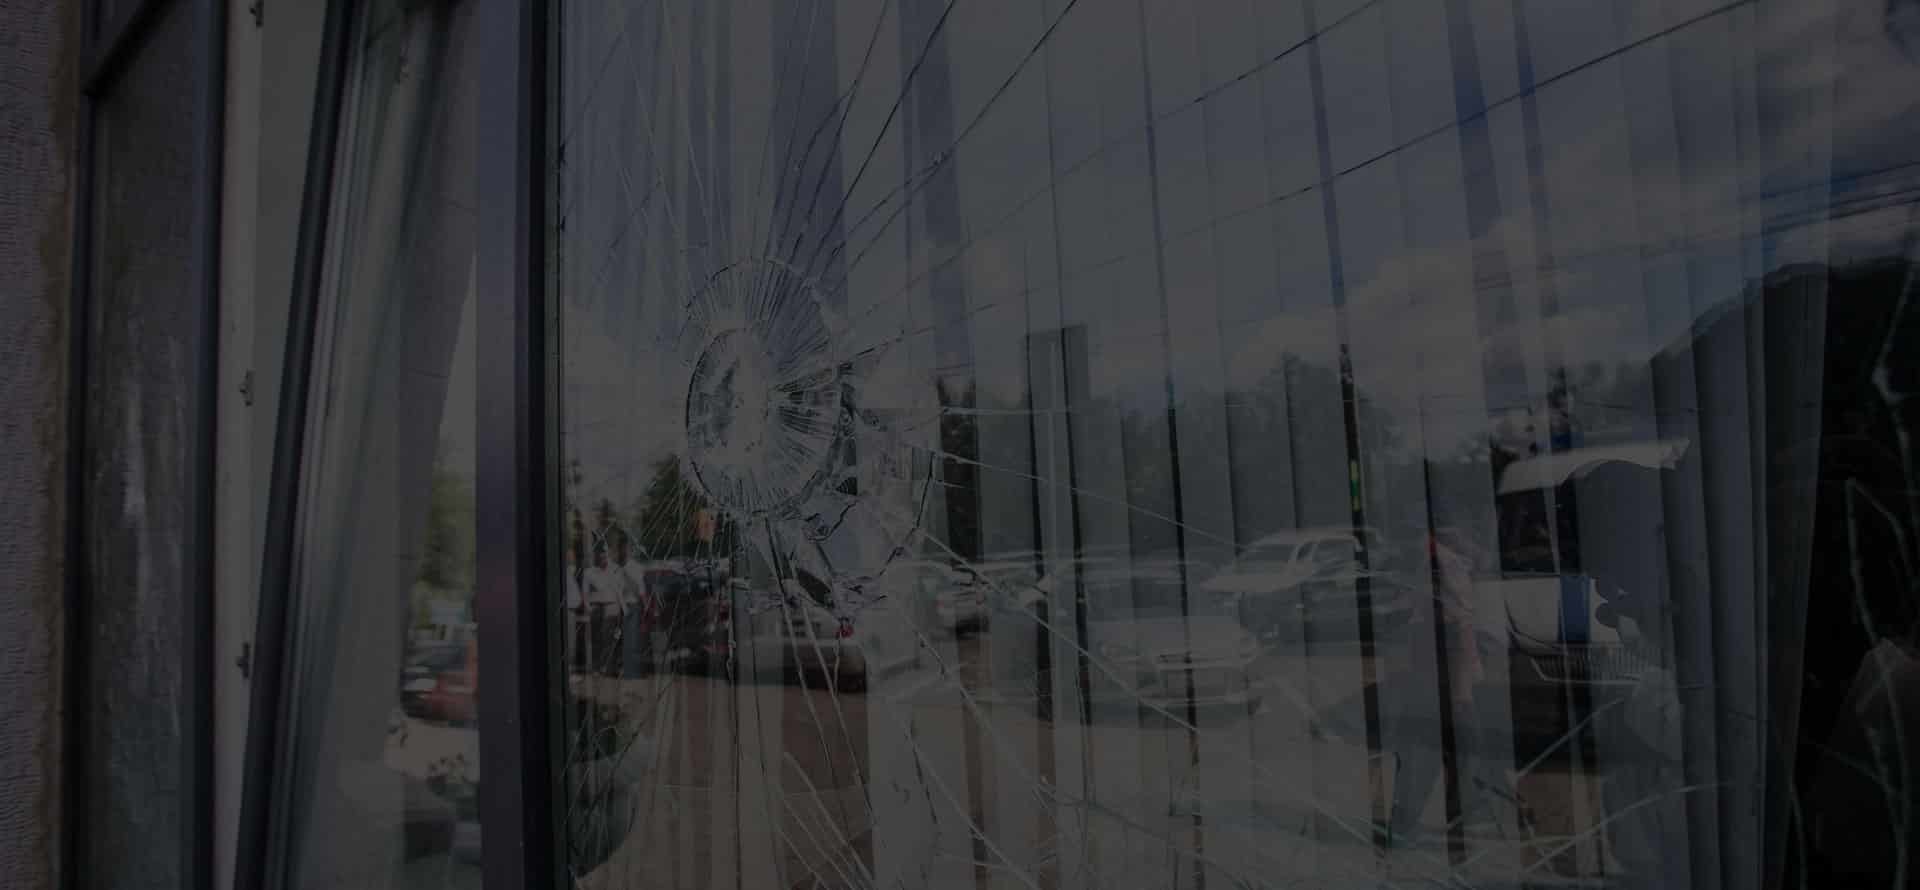 Broken window glass